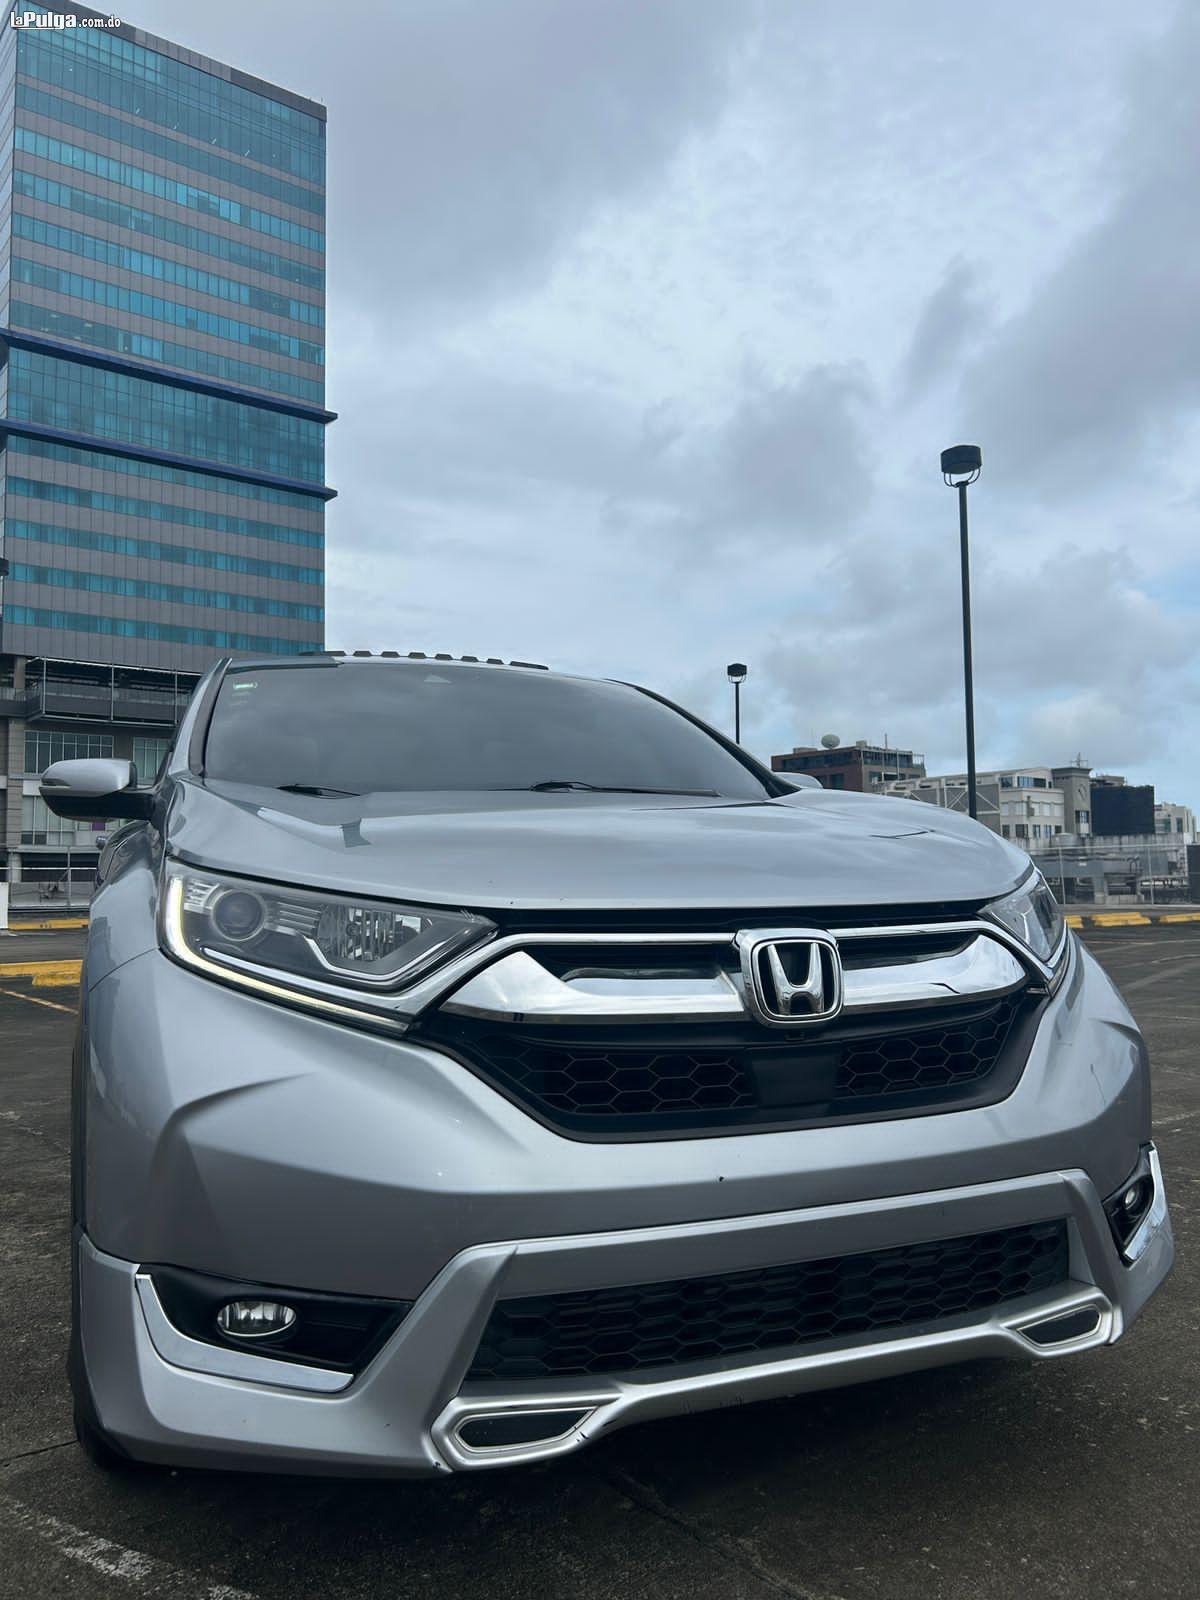 Honda CRV 2018 Gasolina Foto 7161286-3.jpg